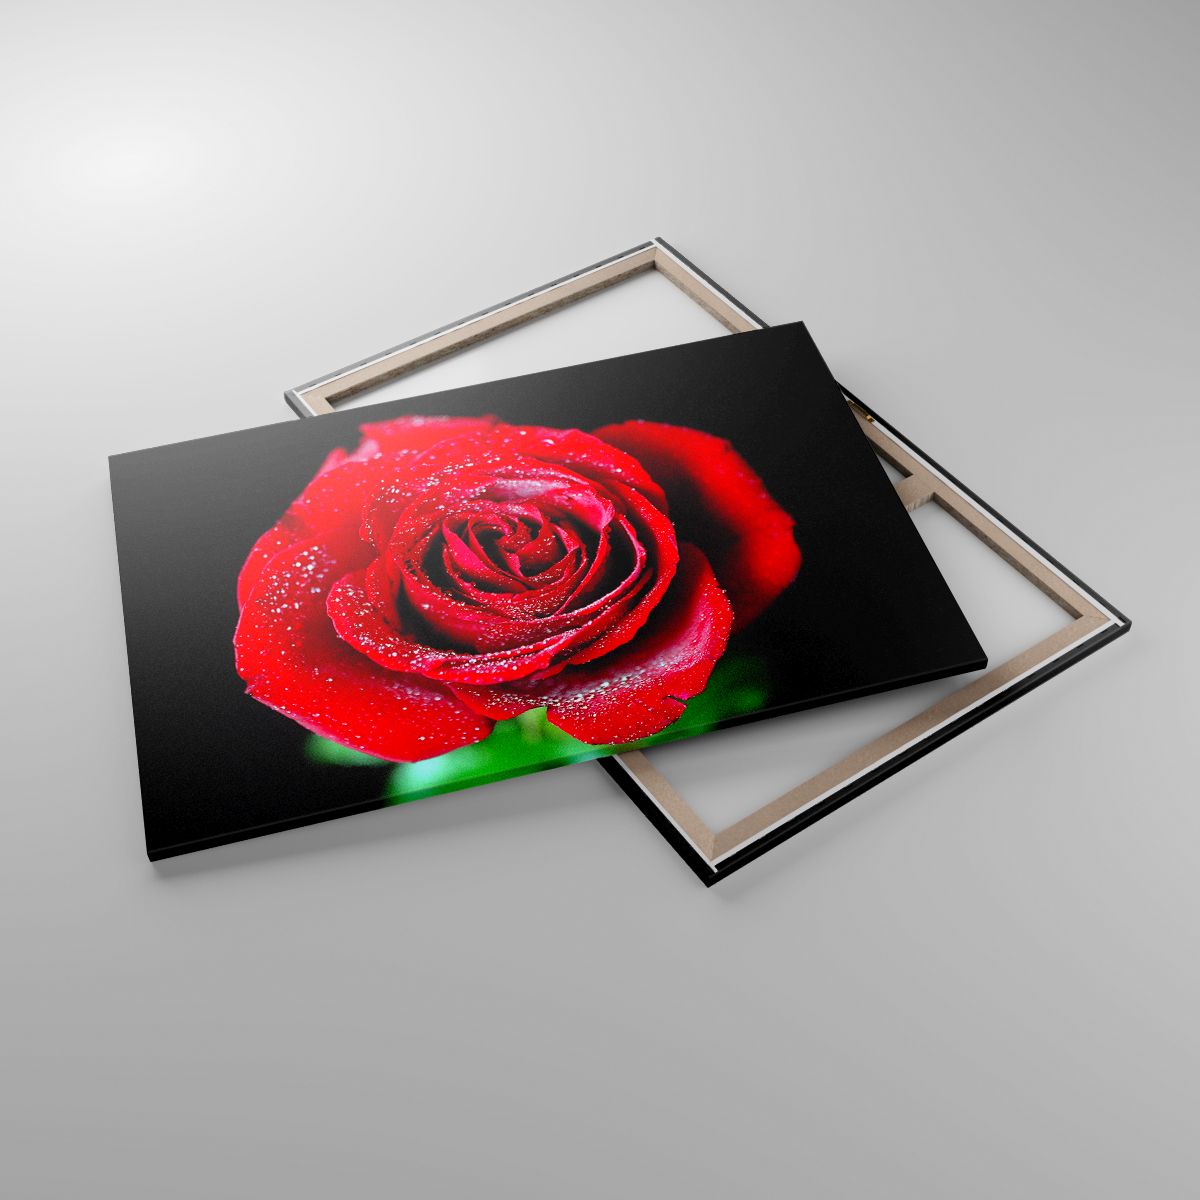 Obrazy Kwiaty, Obrazy Czerwona Róża, Obrazy Płatki Róży, Obrazy Miłość, Obrazy Krople Wody